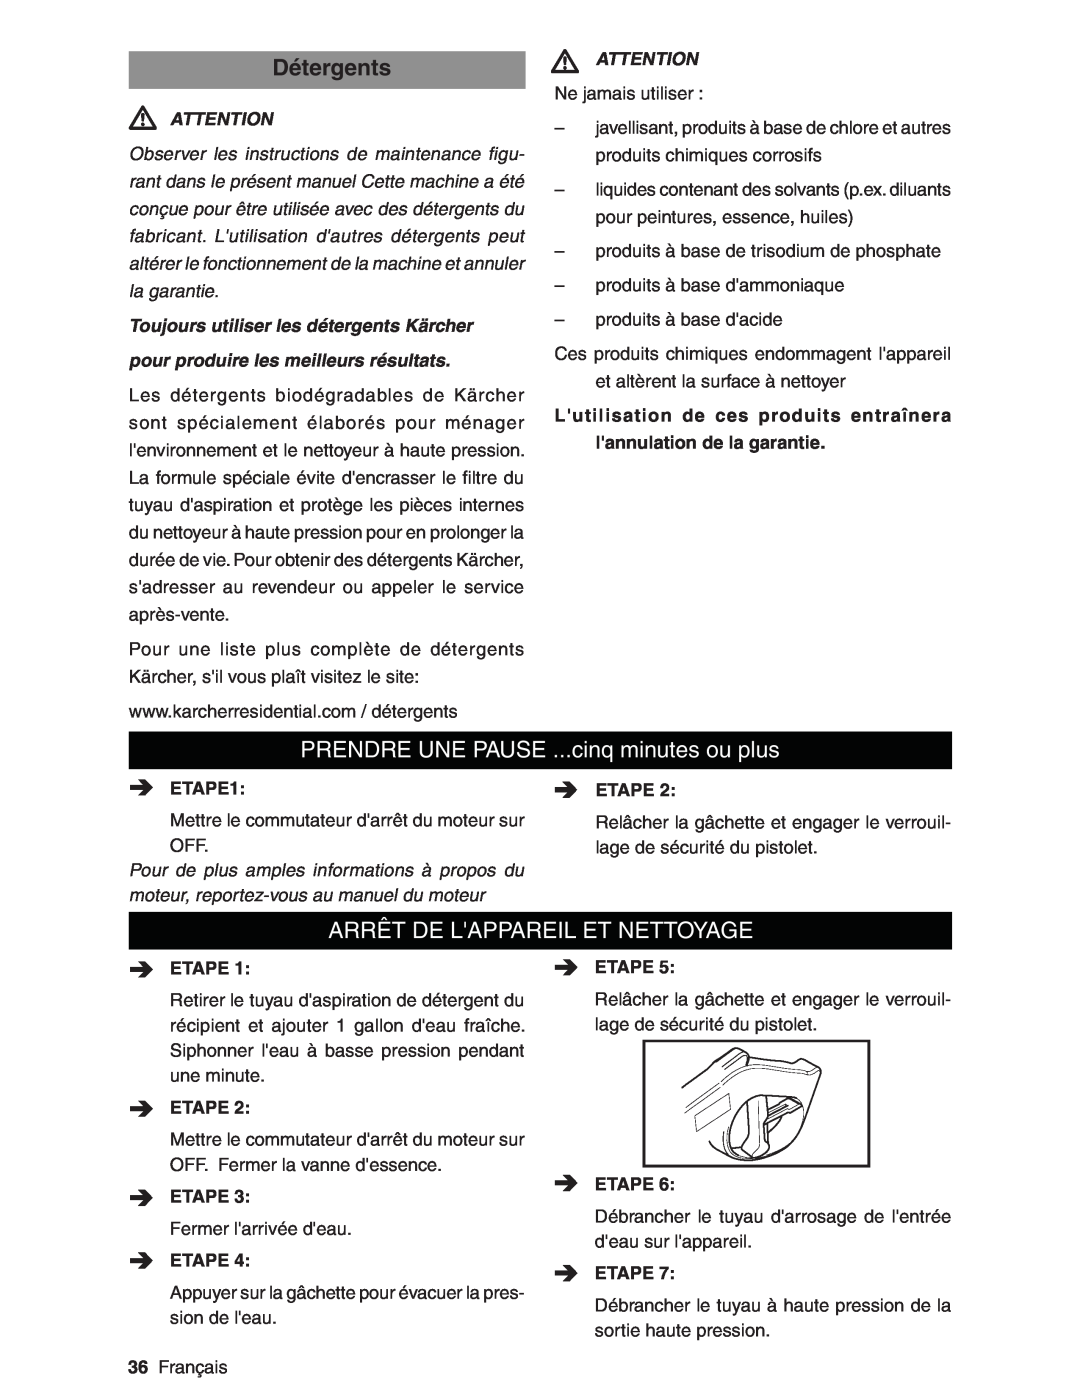 Karcher G3200XH manual DétergentsATTENTION, PRENDRE UNE PAUSE ...cinq minutes ou plus, Arrêt De Lappareil Et Nettoyage 